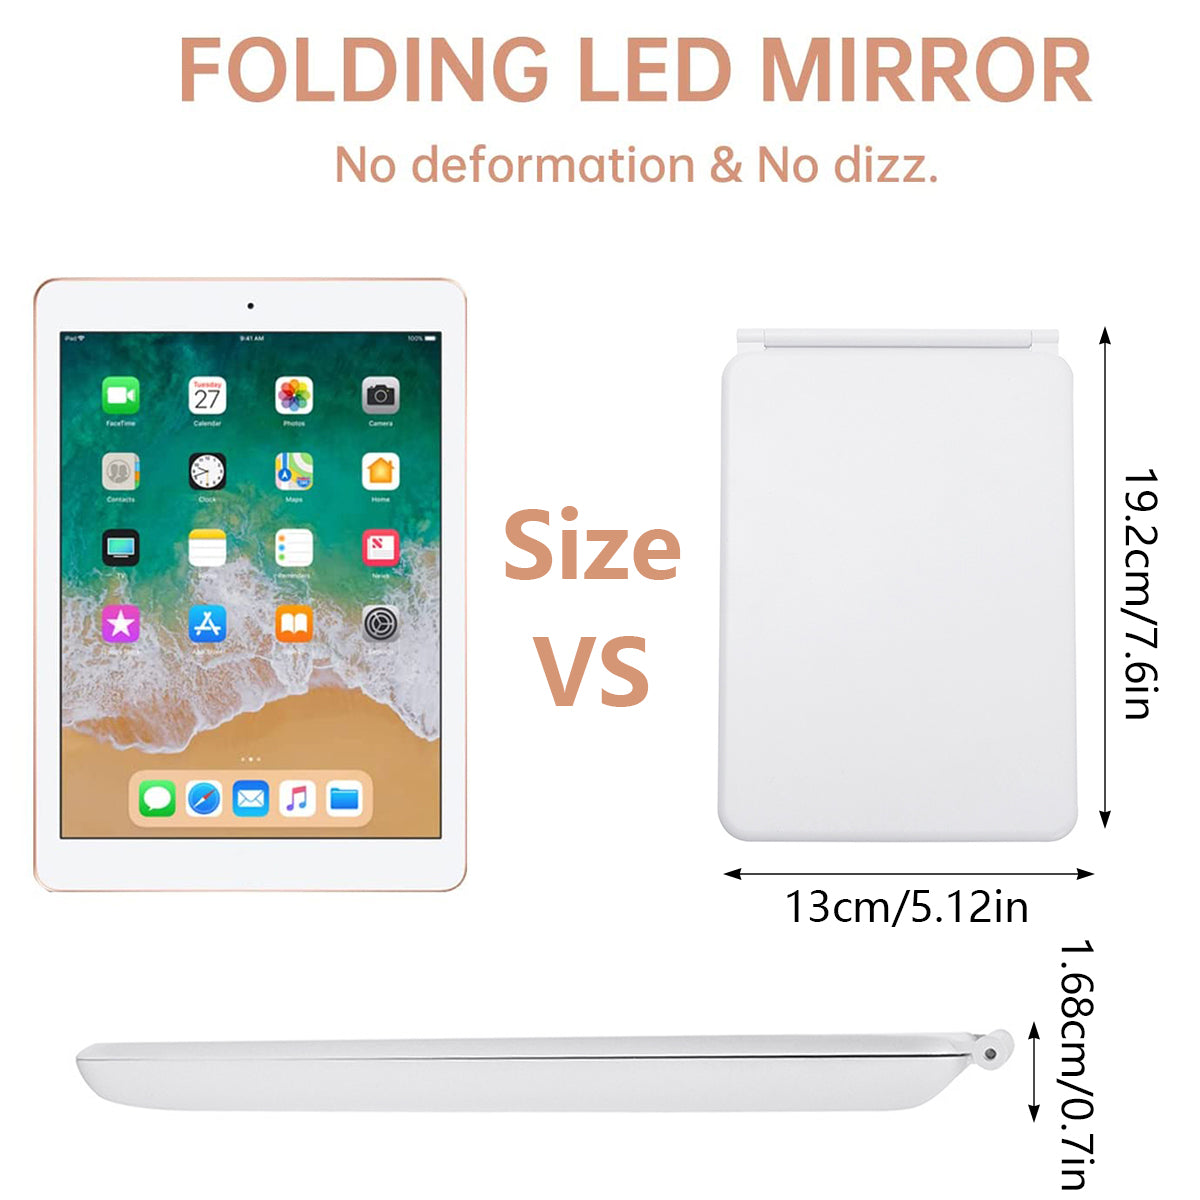 LED Folding Mini Mirror